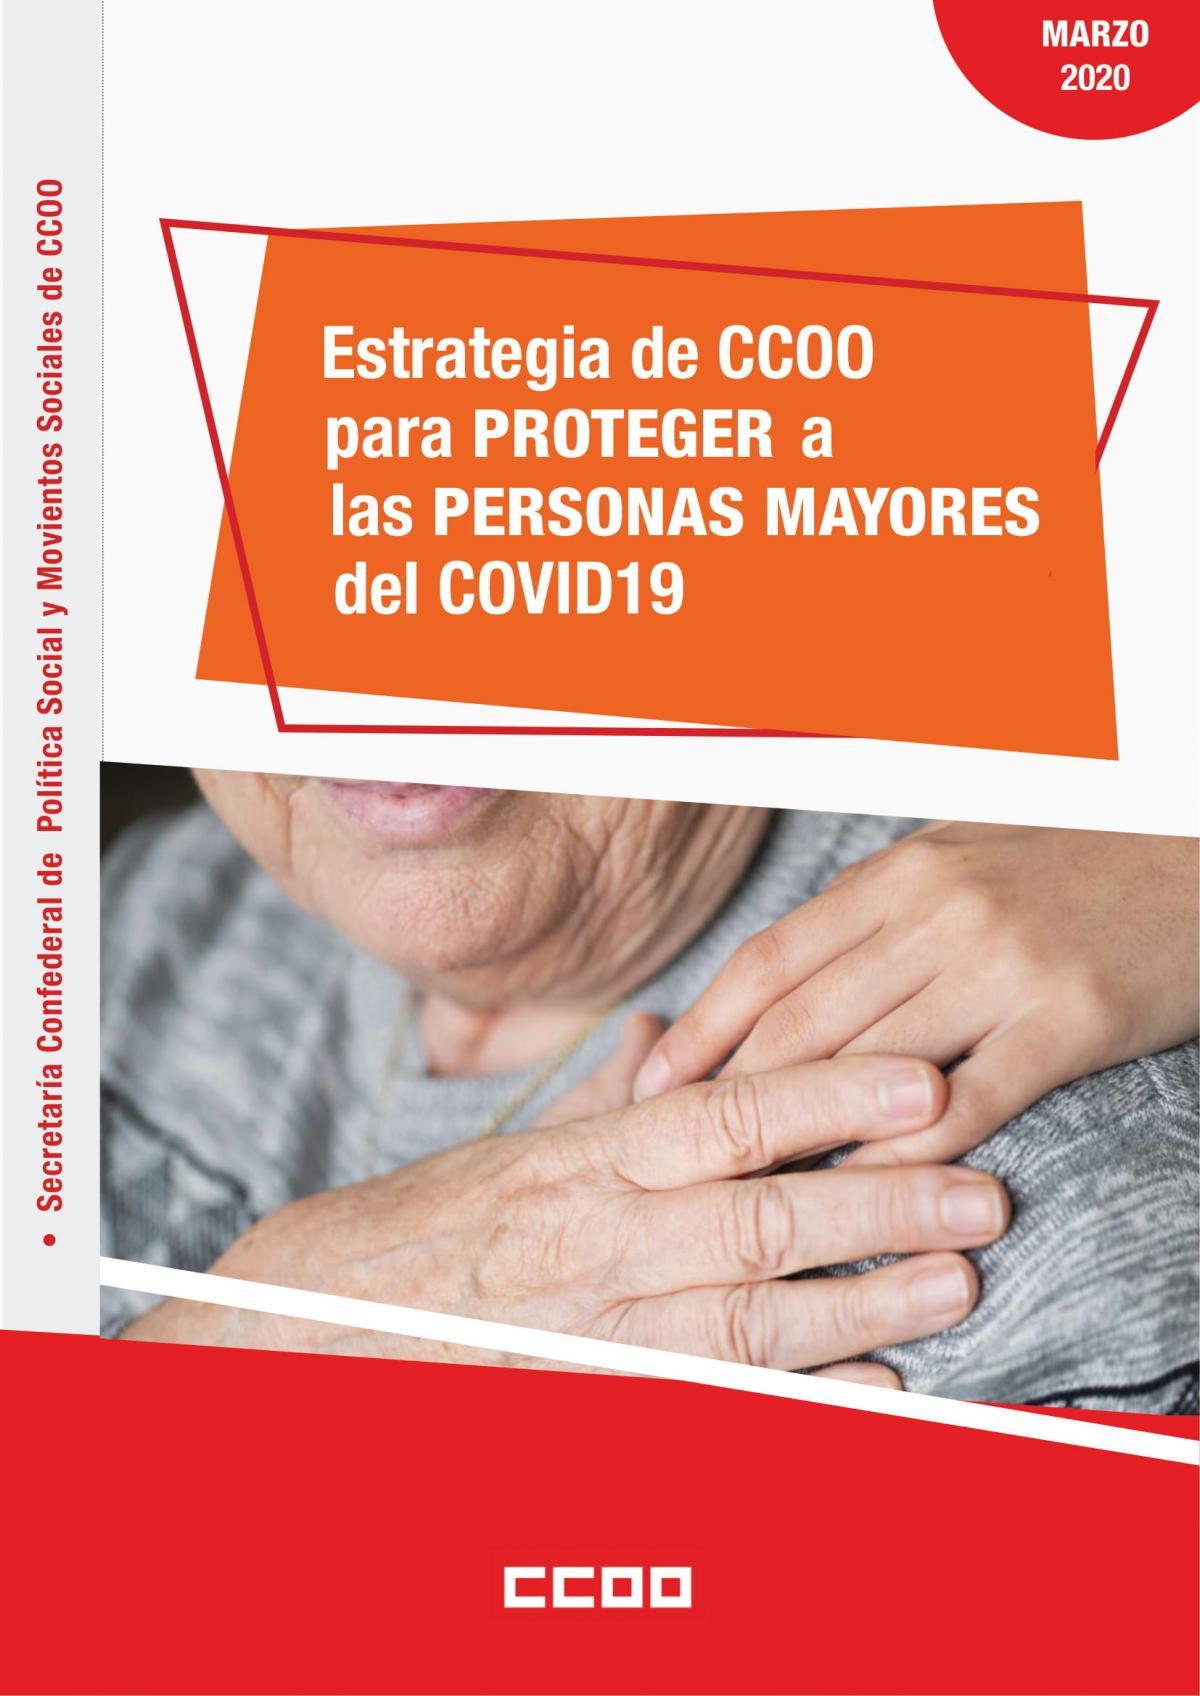 Portada documento Estrategia para proteger personas mayores del COVID-19